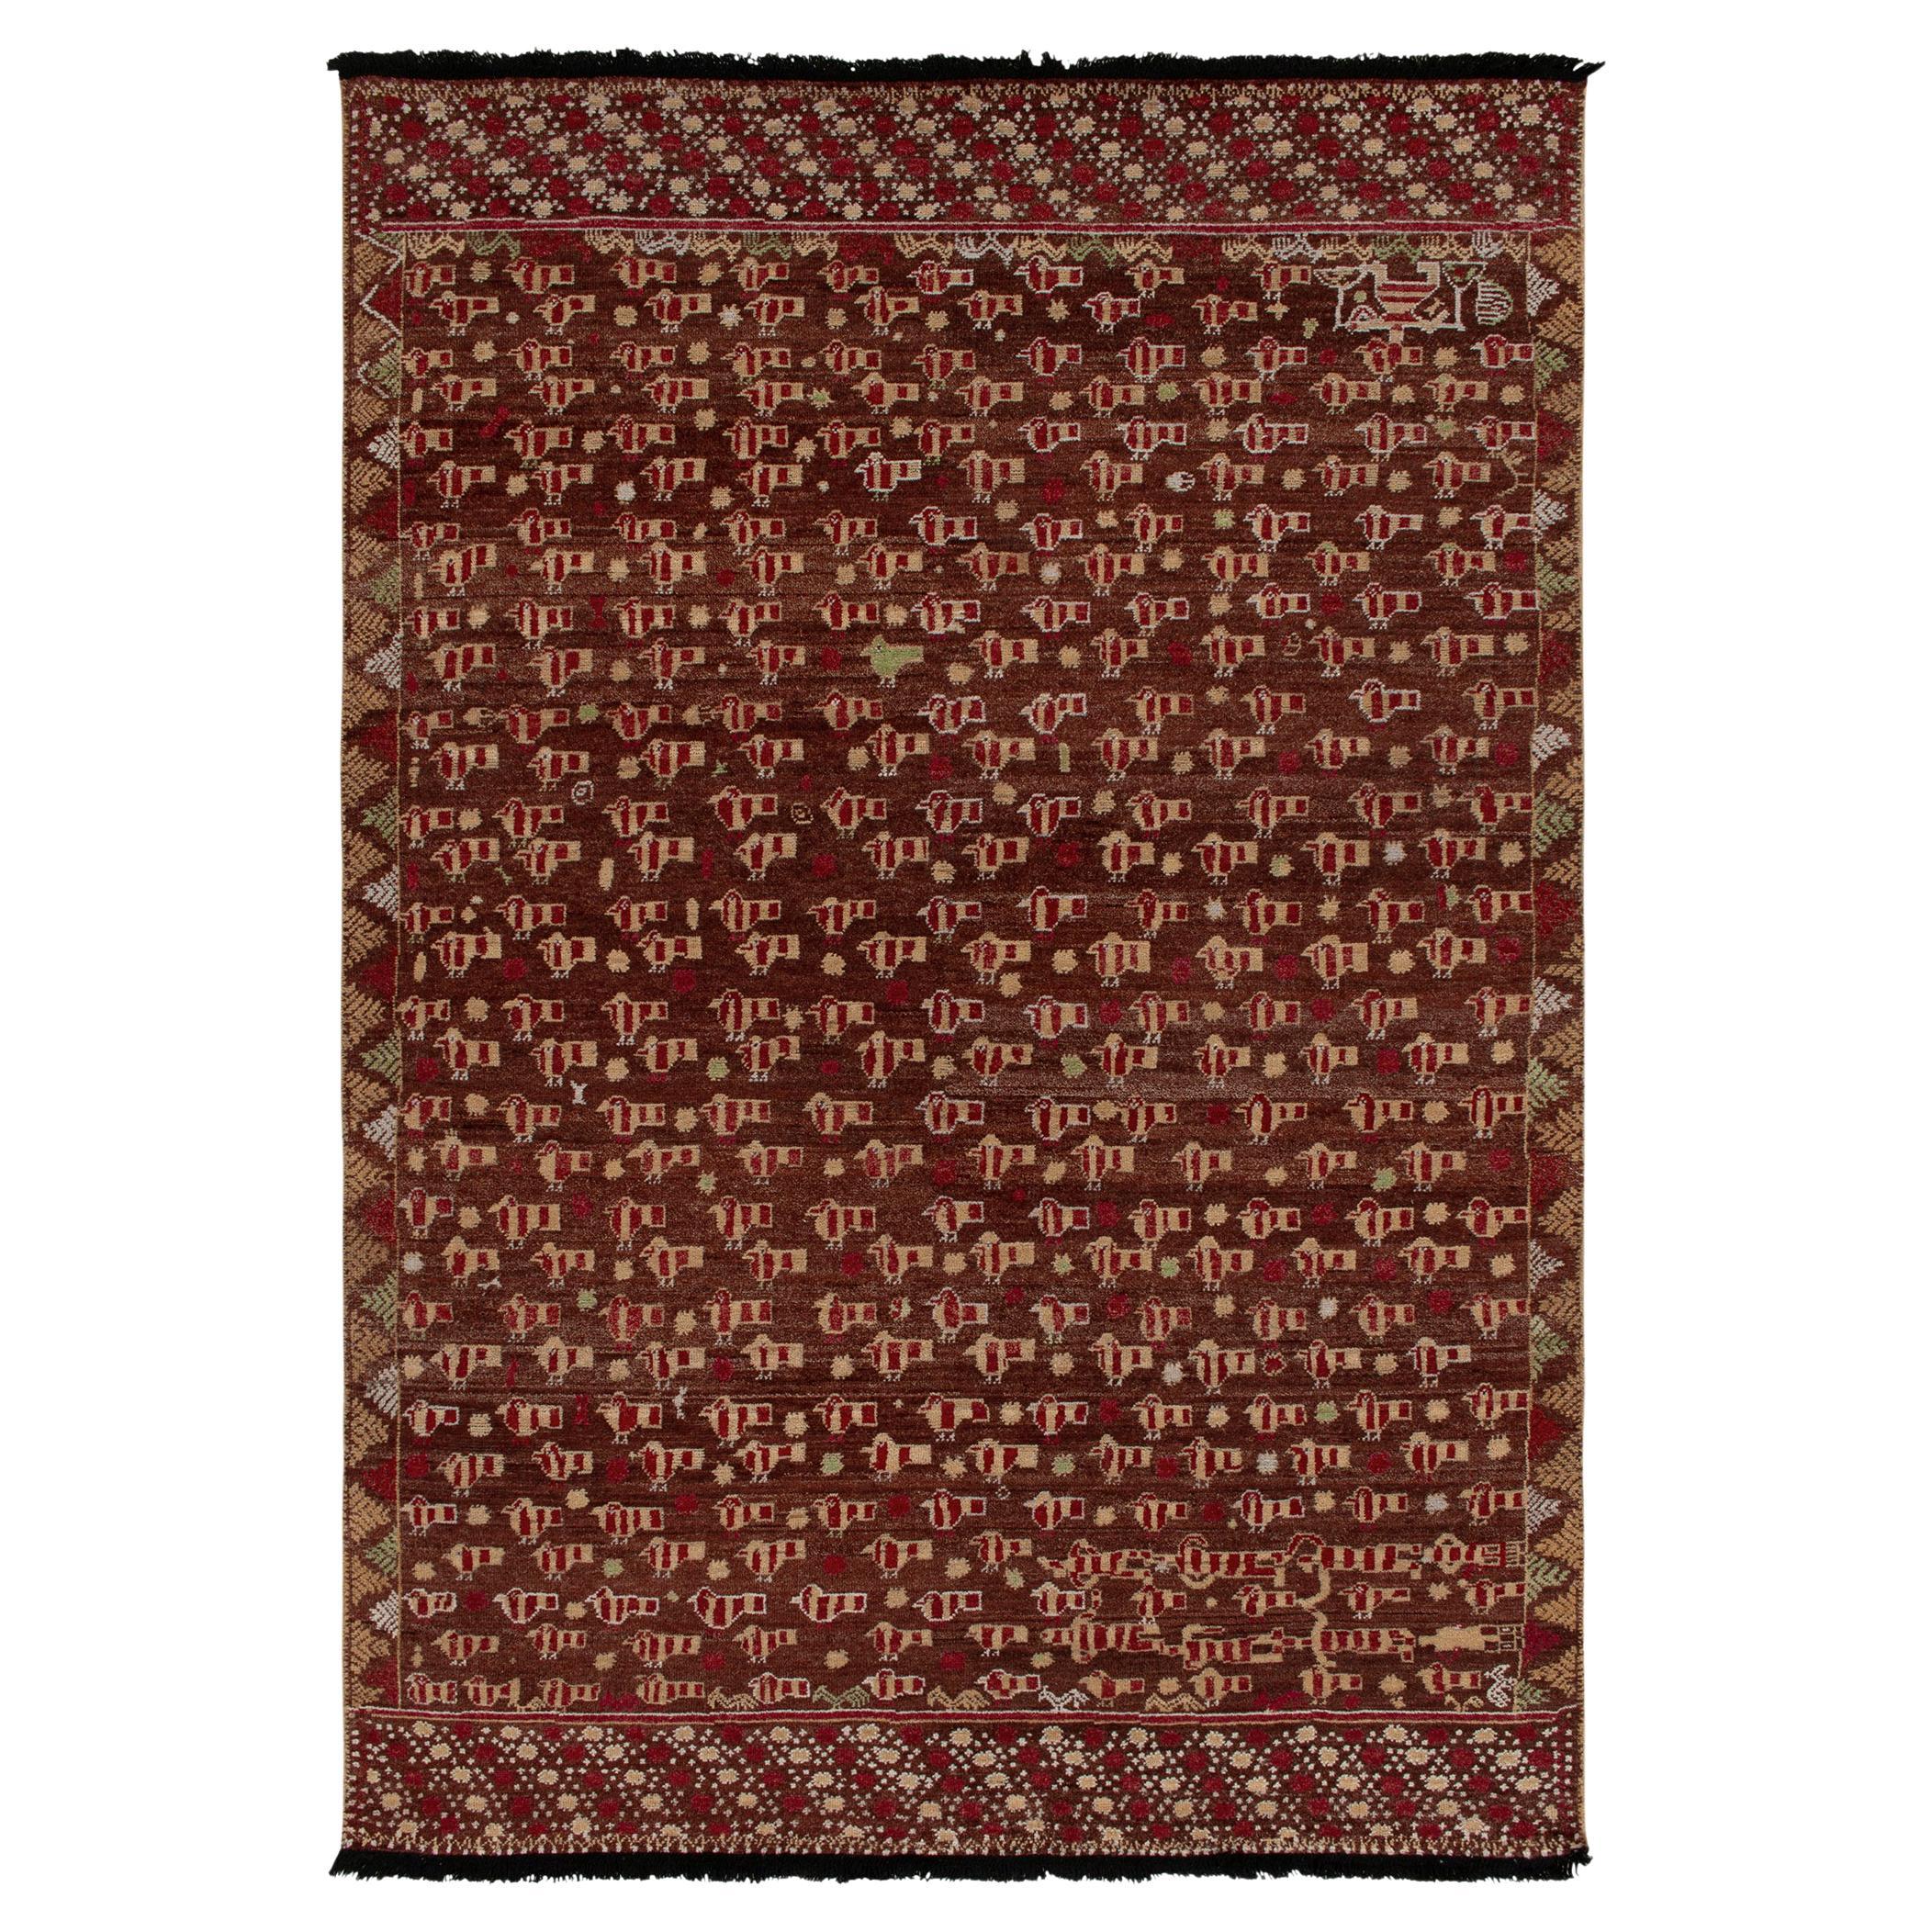 Rug & Kilim's Phulkari Style rug in Red, Brown, Beige Pictorial Pattern (tapis de style Phulkari en rouge, brun et beige)